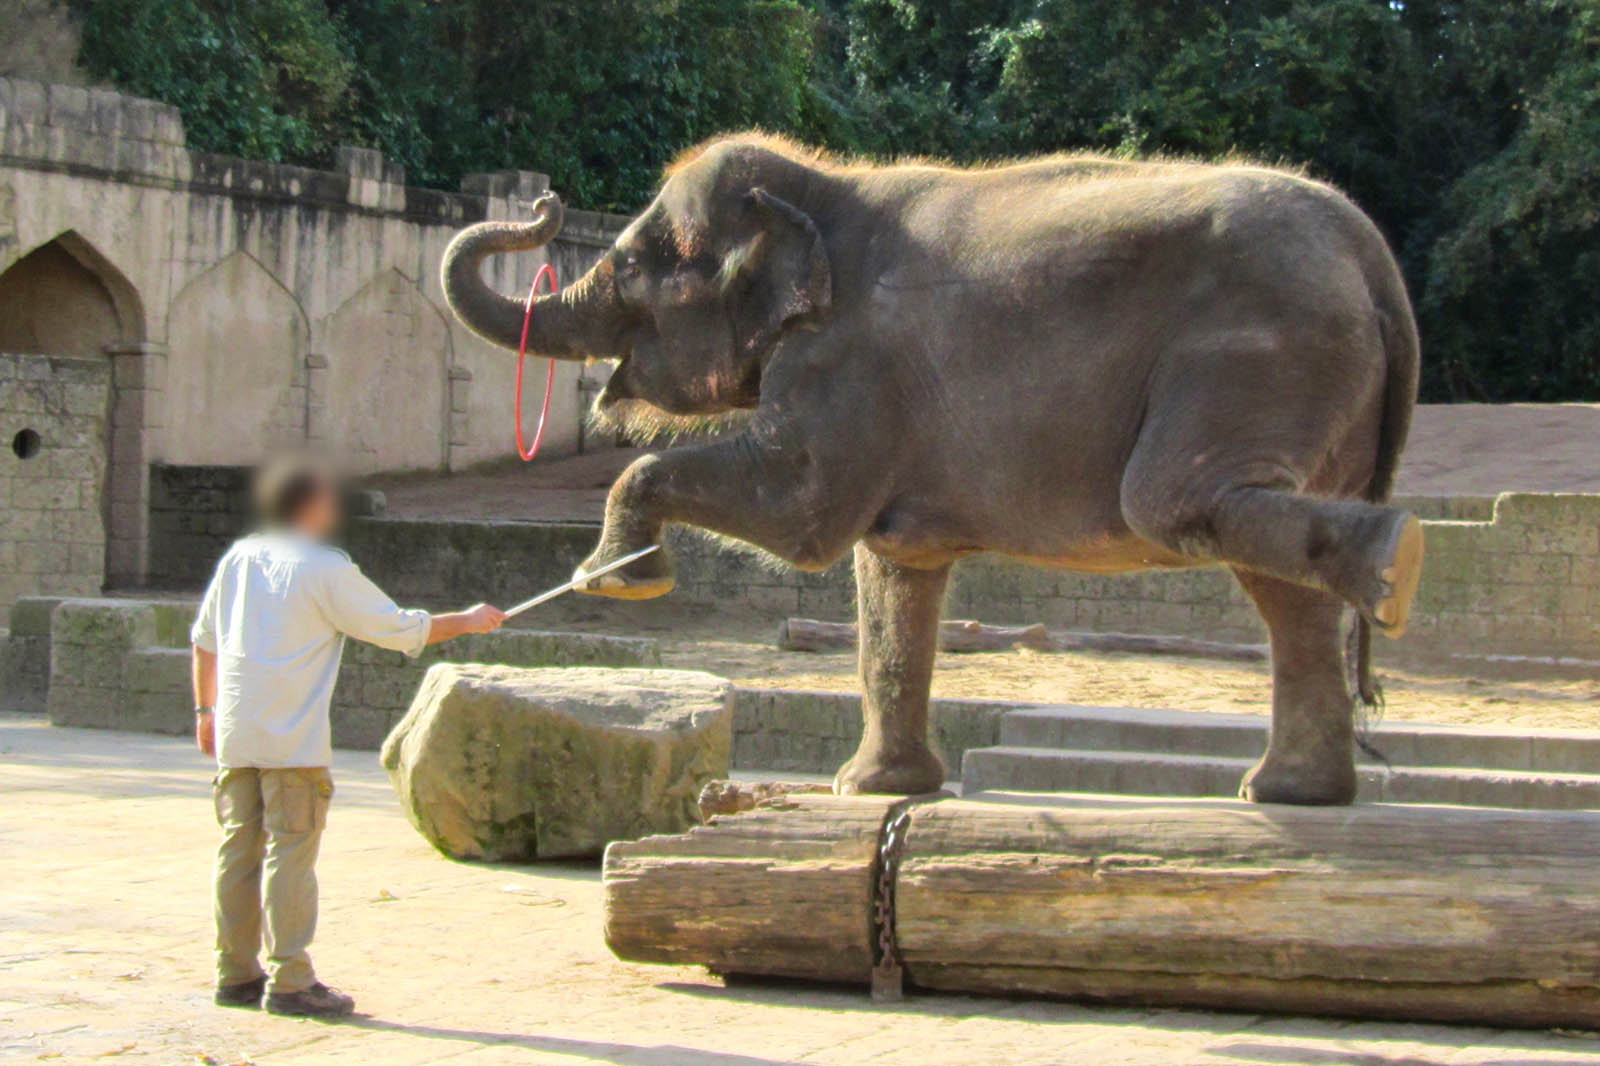 Elefant im Zoo Hannover muss Kunststuecke auffuehren